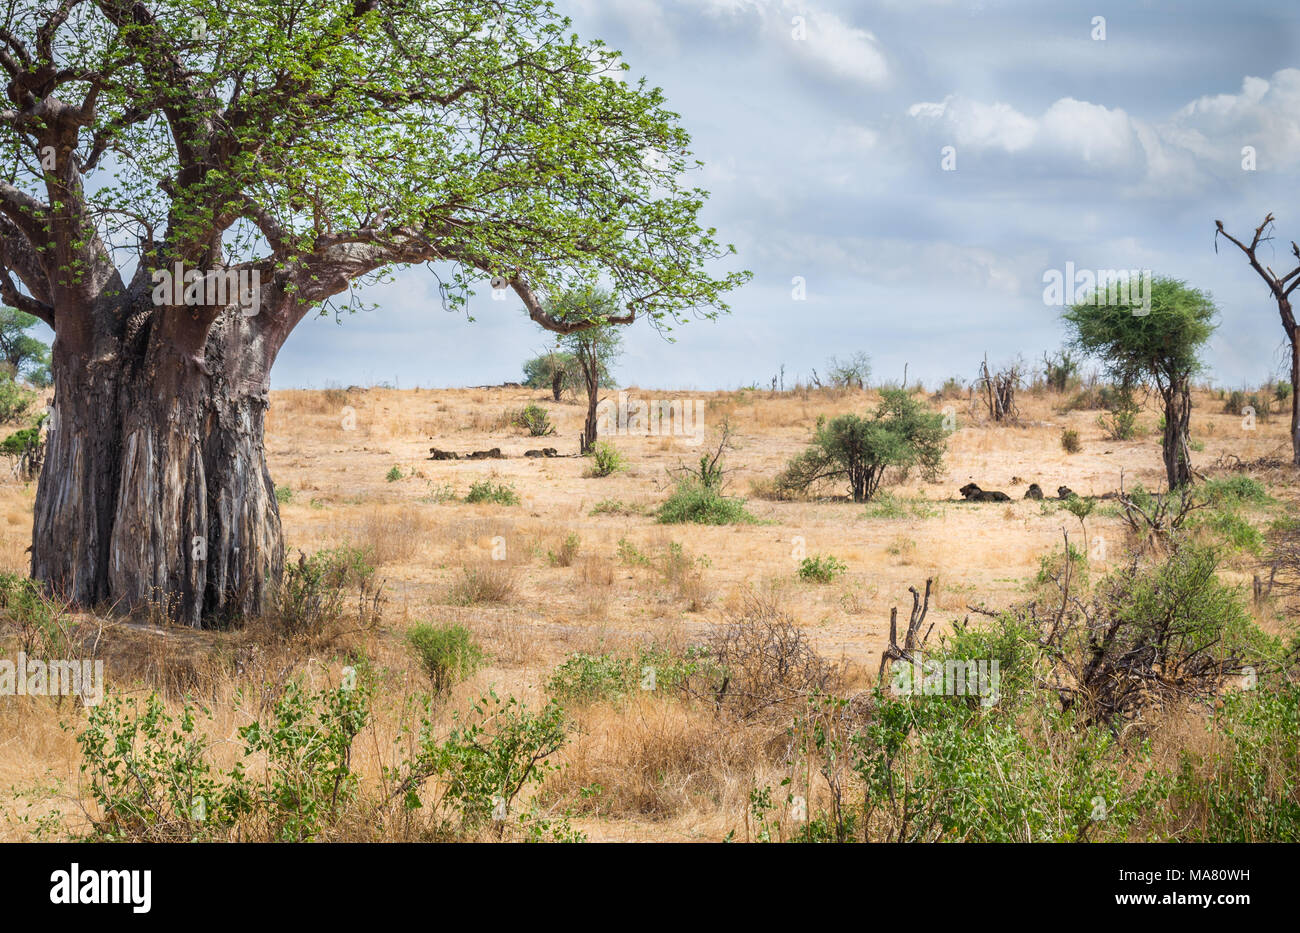 Lion sous l'arbre, safari Afrique Tanzanie Banque D'Images